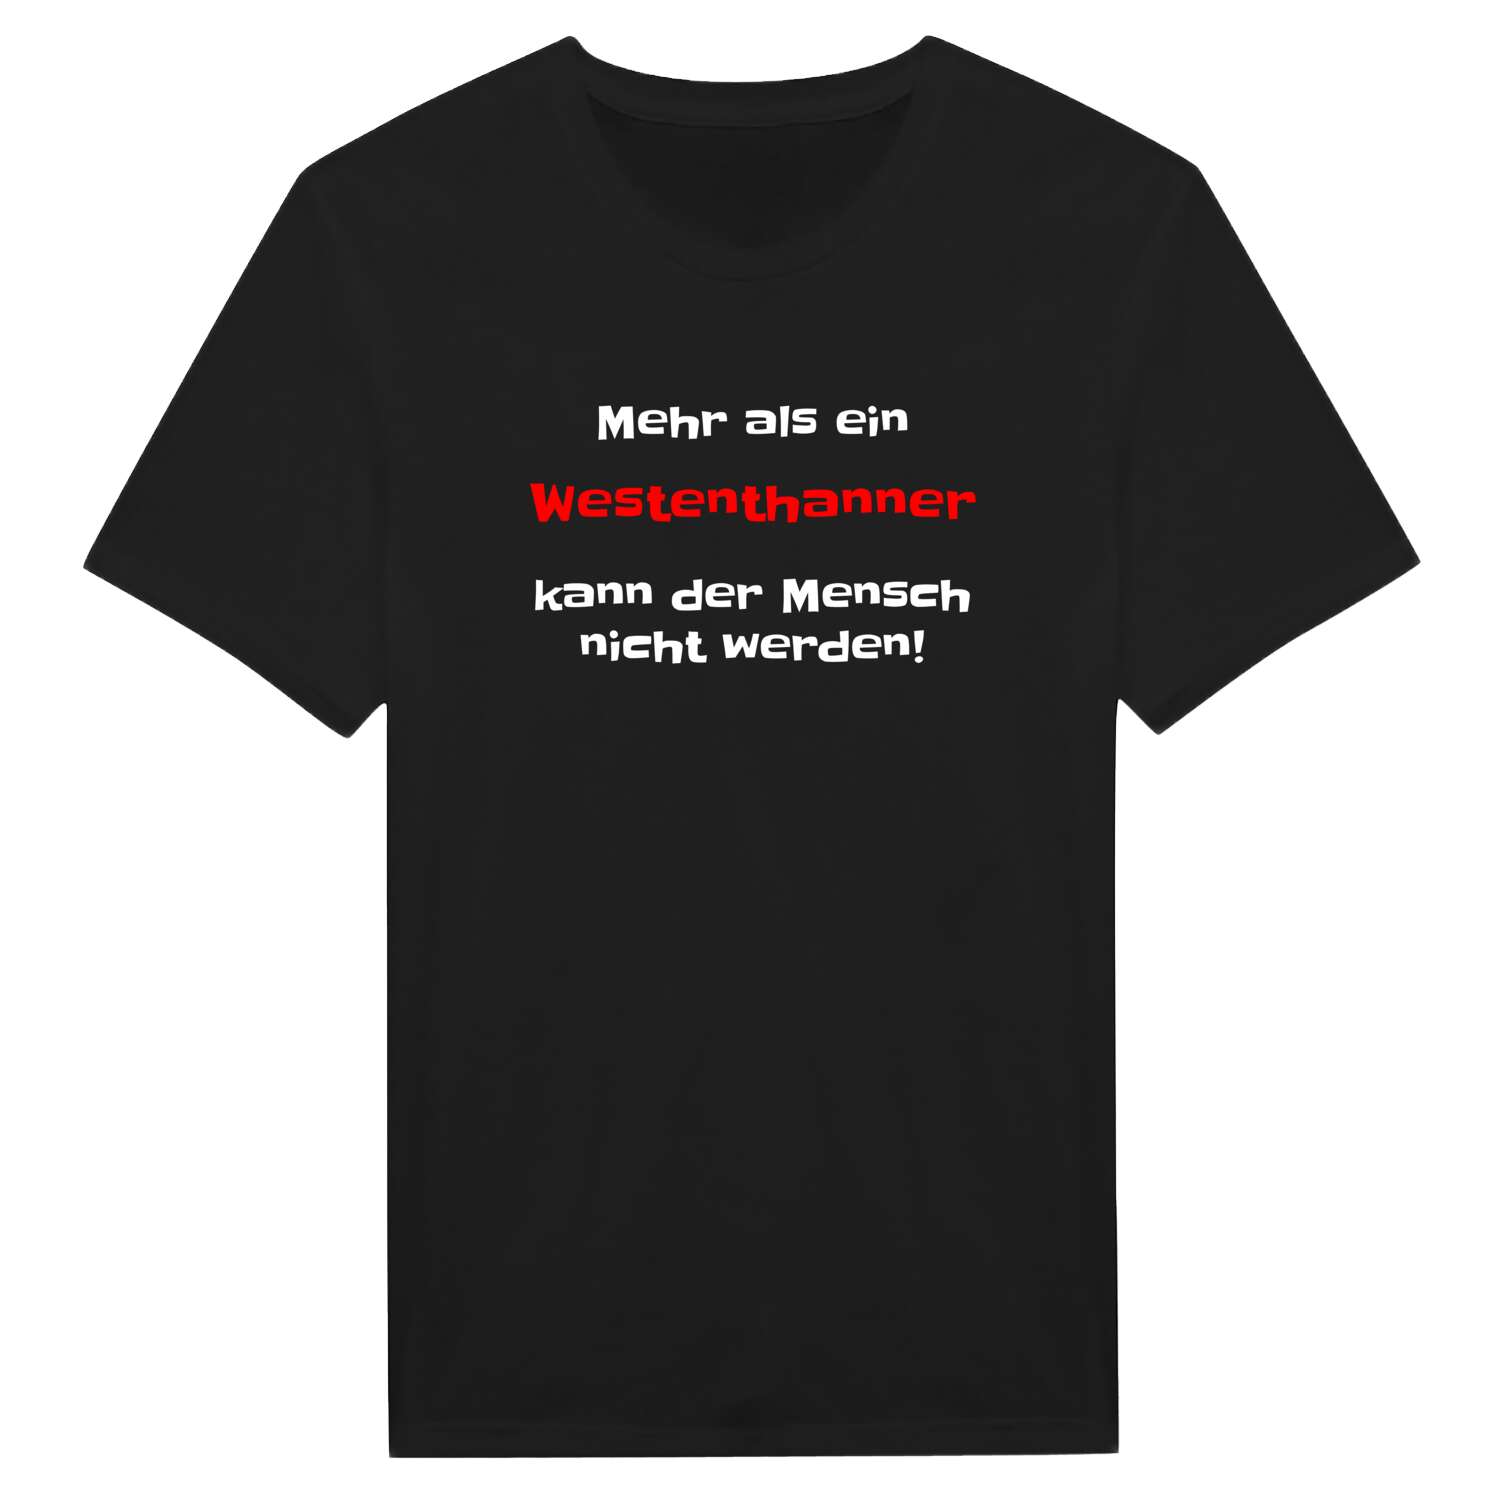 Westenthann T-Shirt »Mehr als ein«